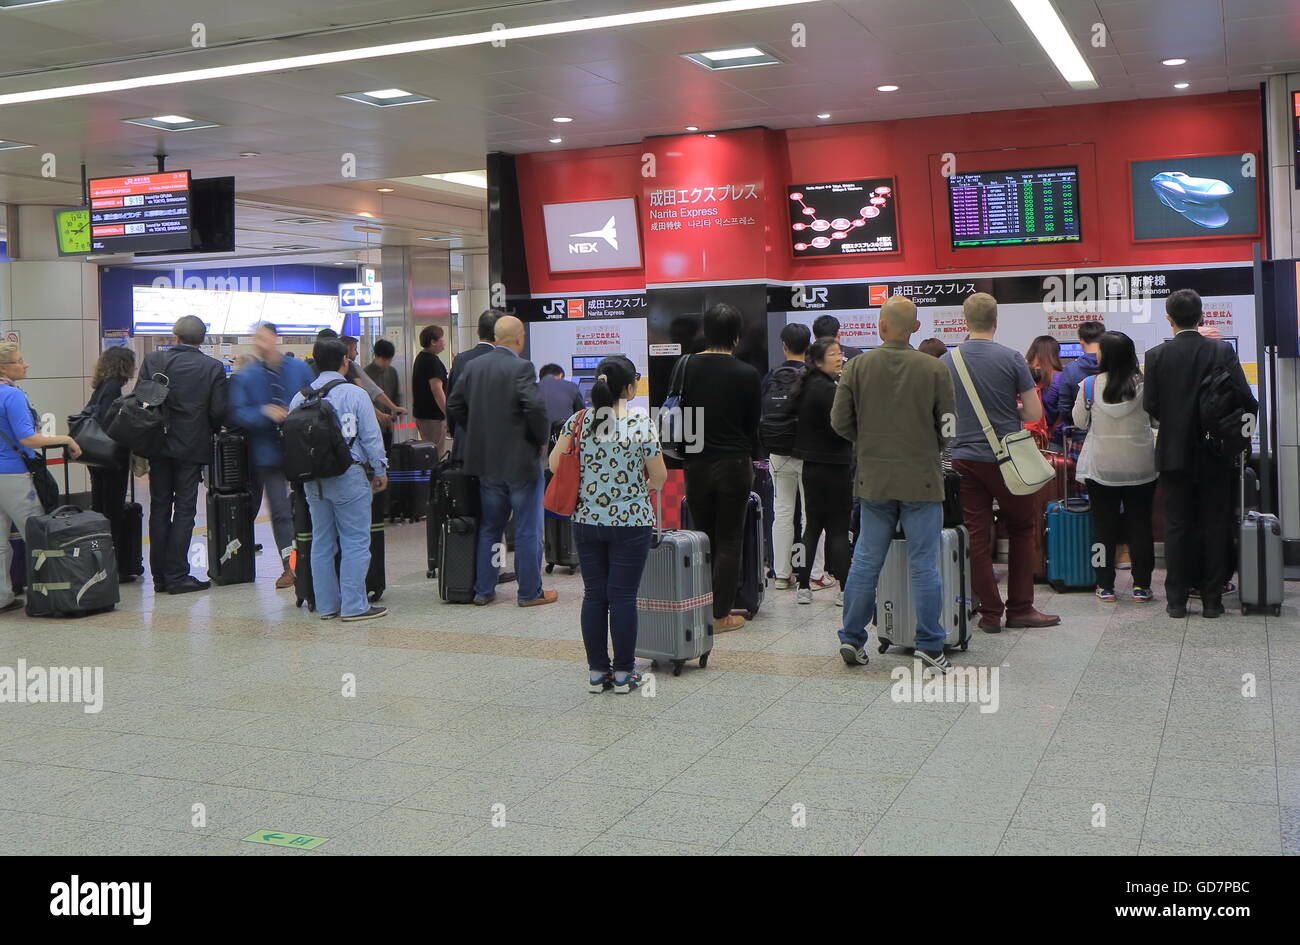 People buy tickets for Narita express at Narita Airport in Tokyo Japan. Stock Photo